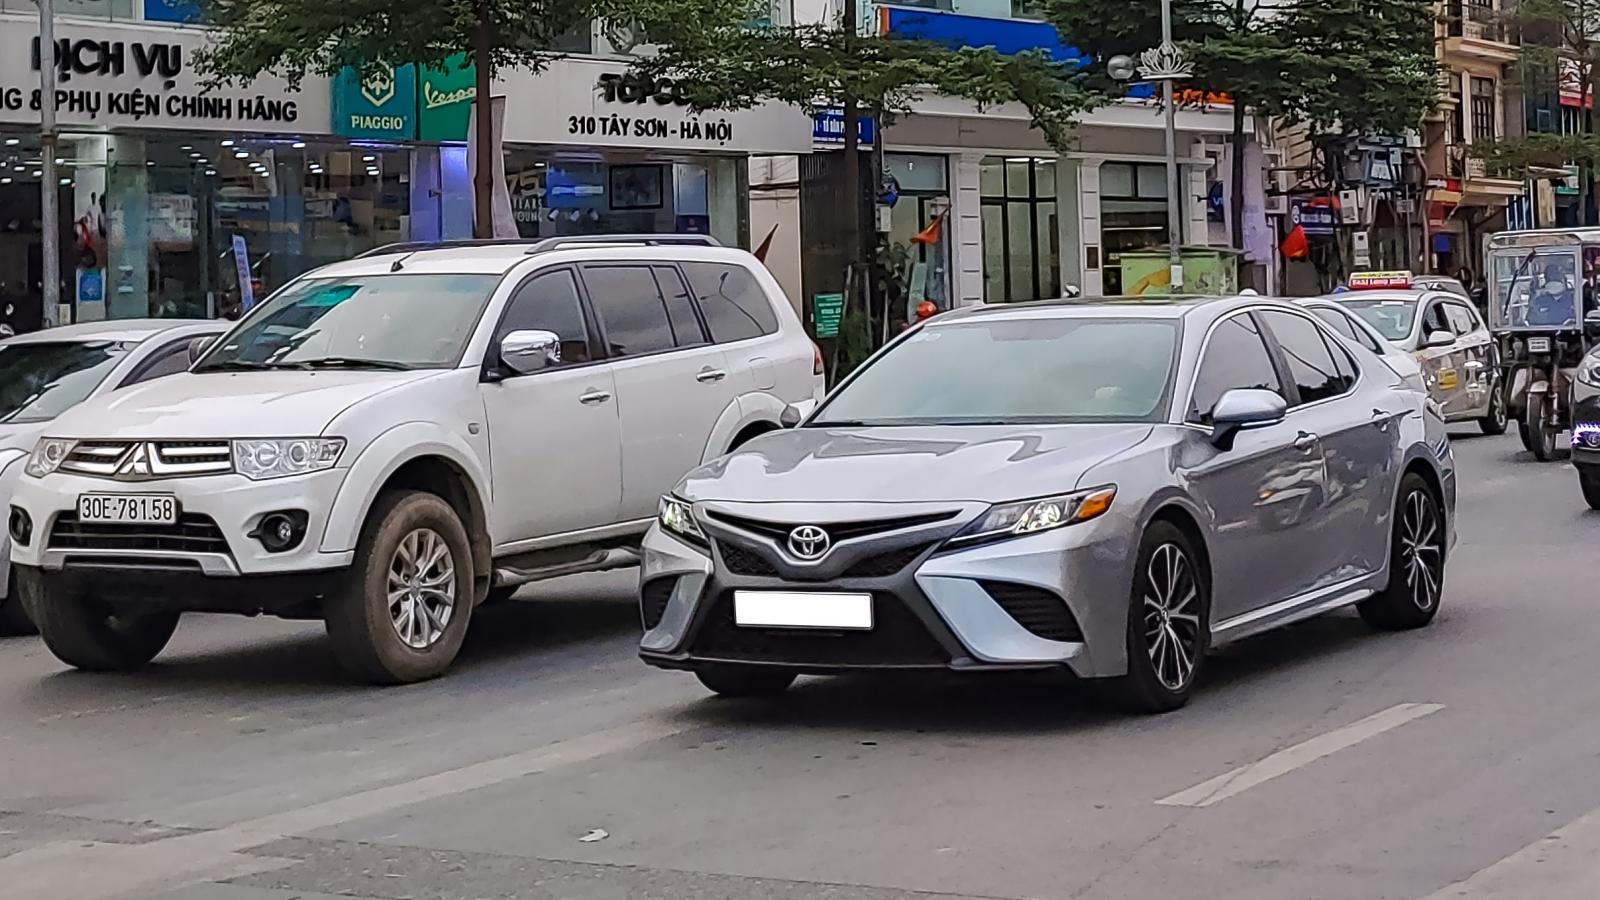 Hình ảnh chiếc Toyota Camry SE 2021 trên phố